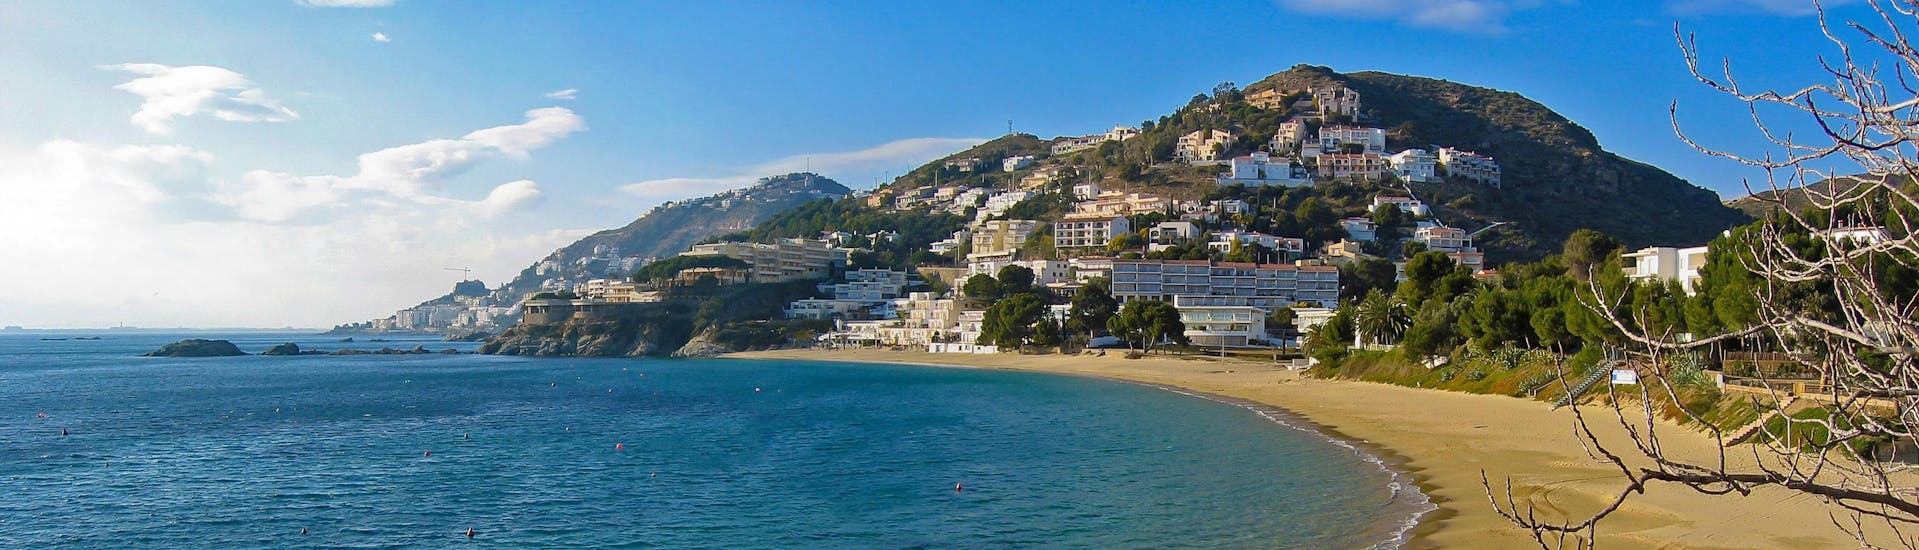 Imagen de la costa de Roses, Costa Brava, un destino popular para las excursiones en barco.